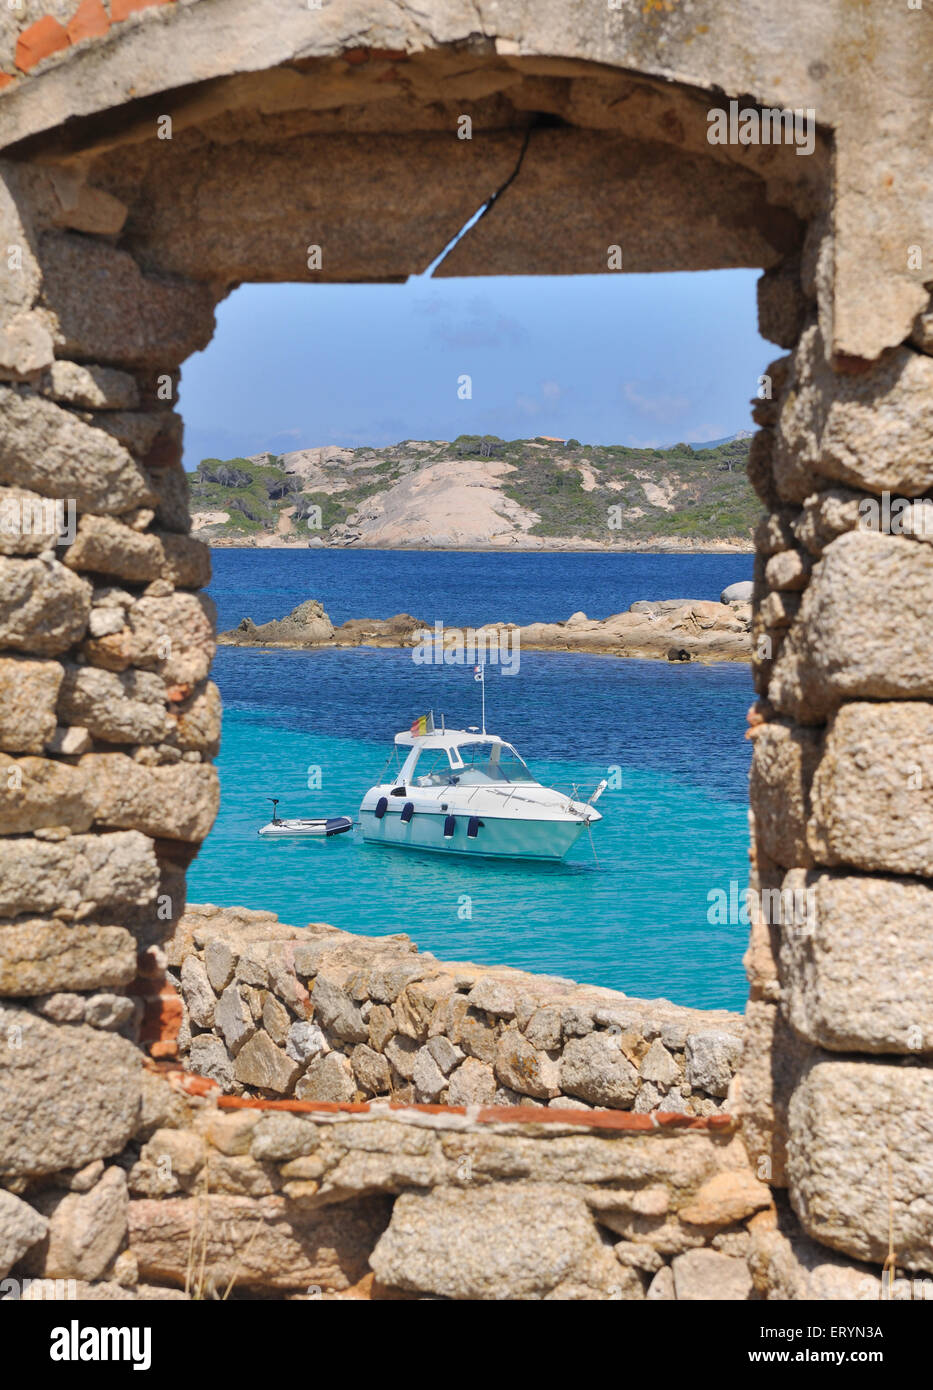 Barca sul mare turchese visto attraverso una finestra di un vecchio edificio in pietra Foto Stock